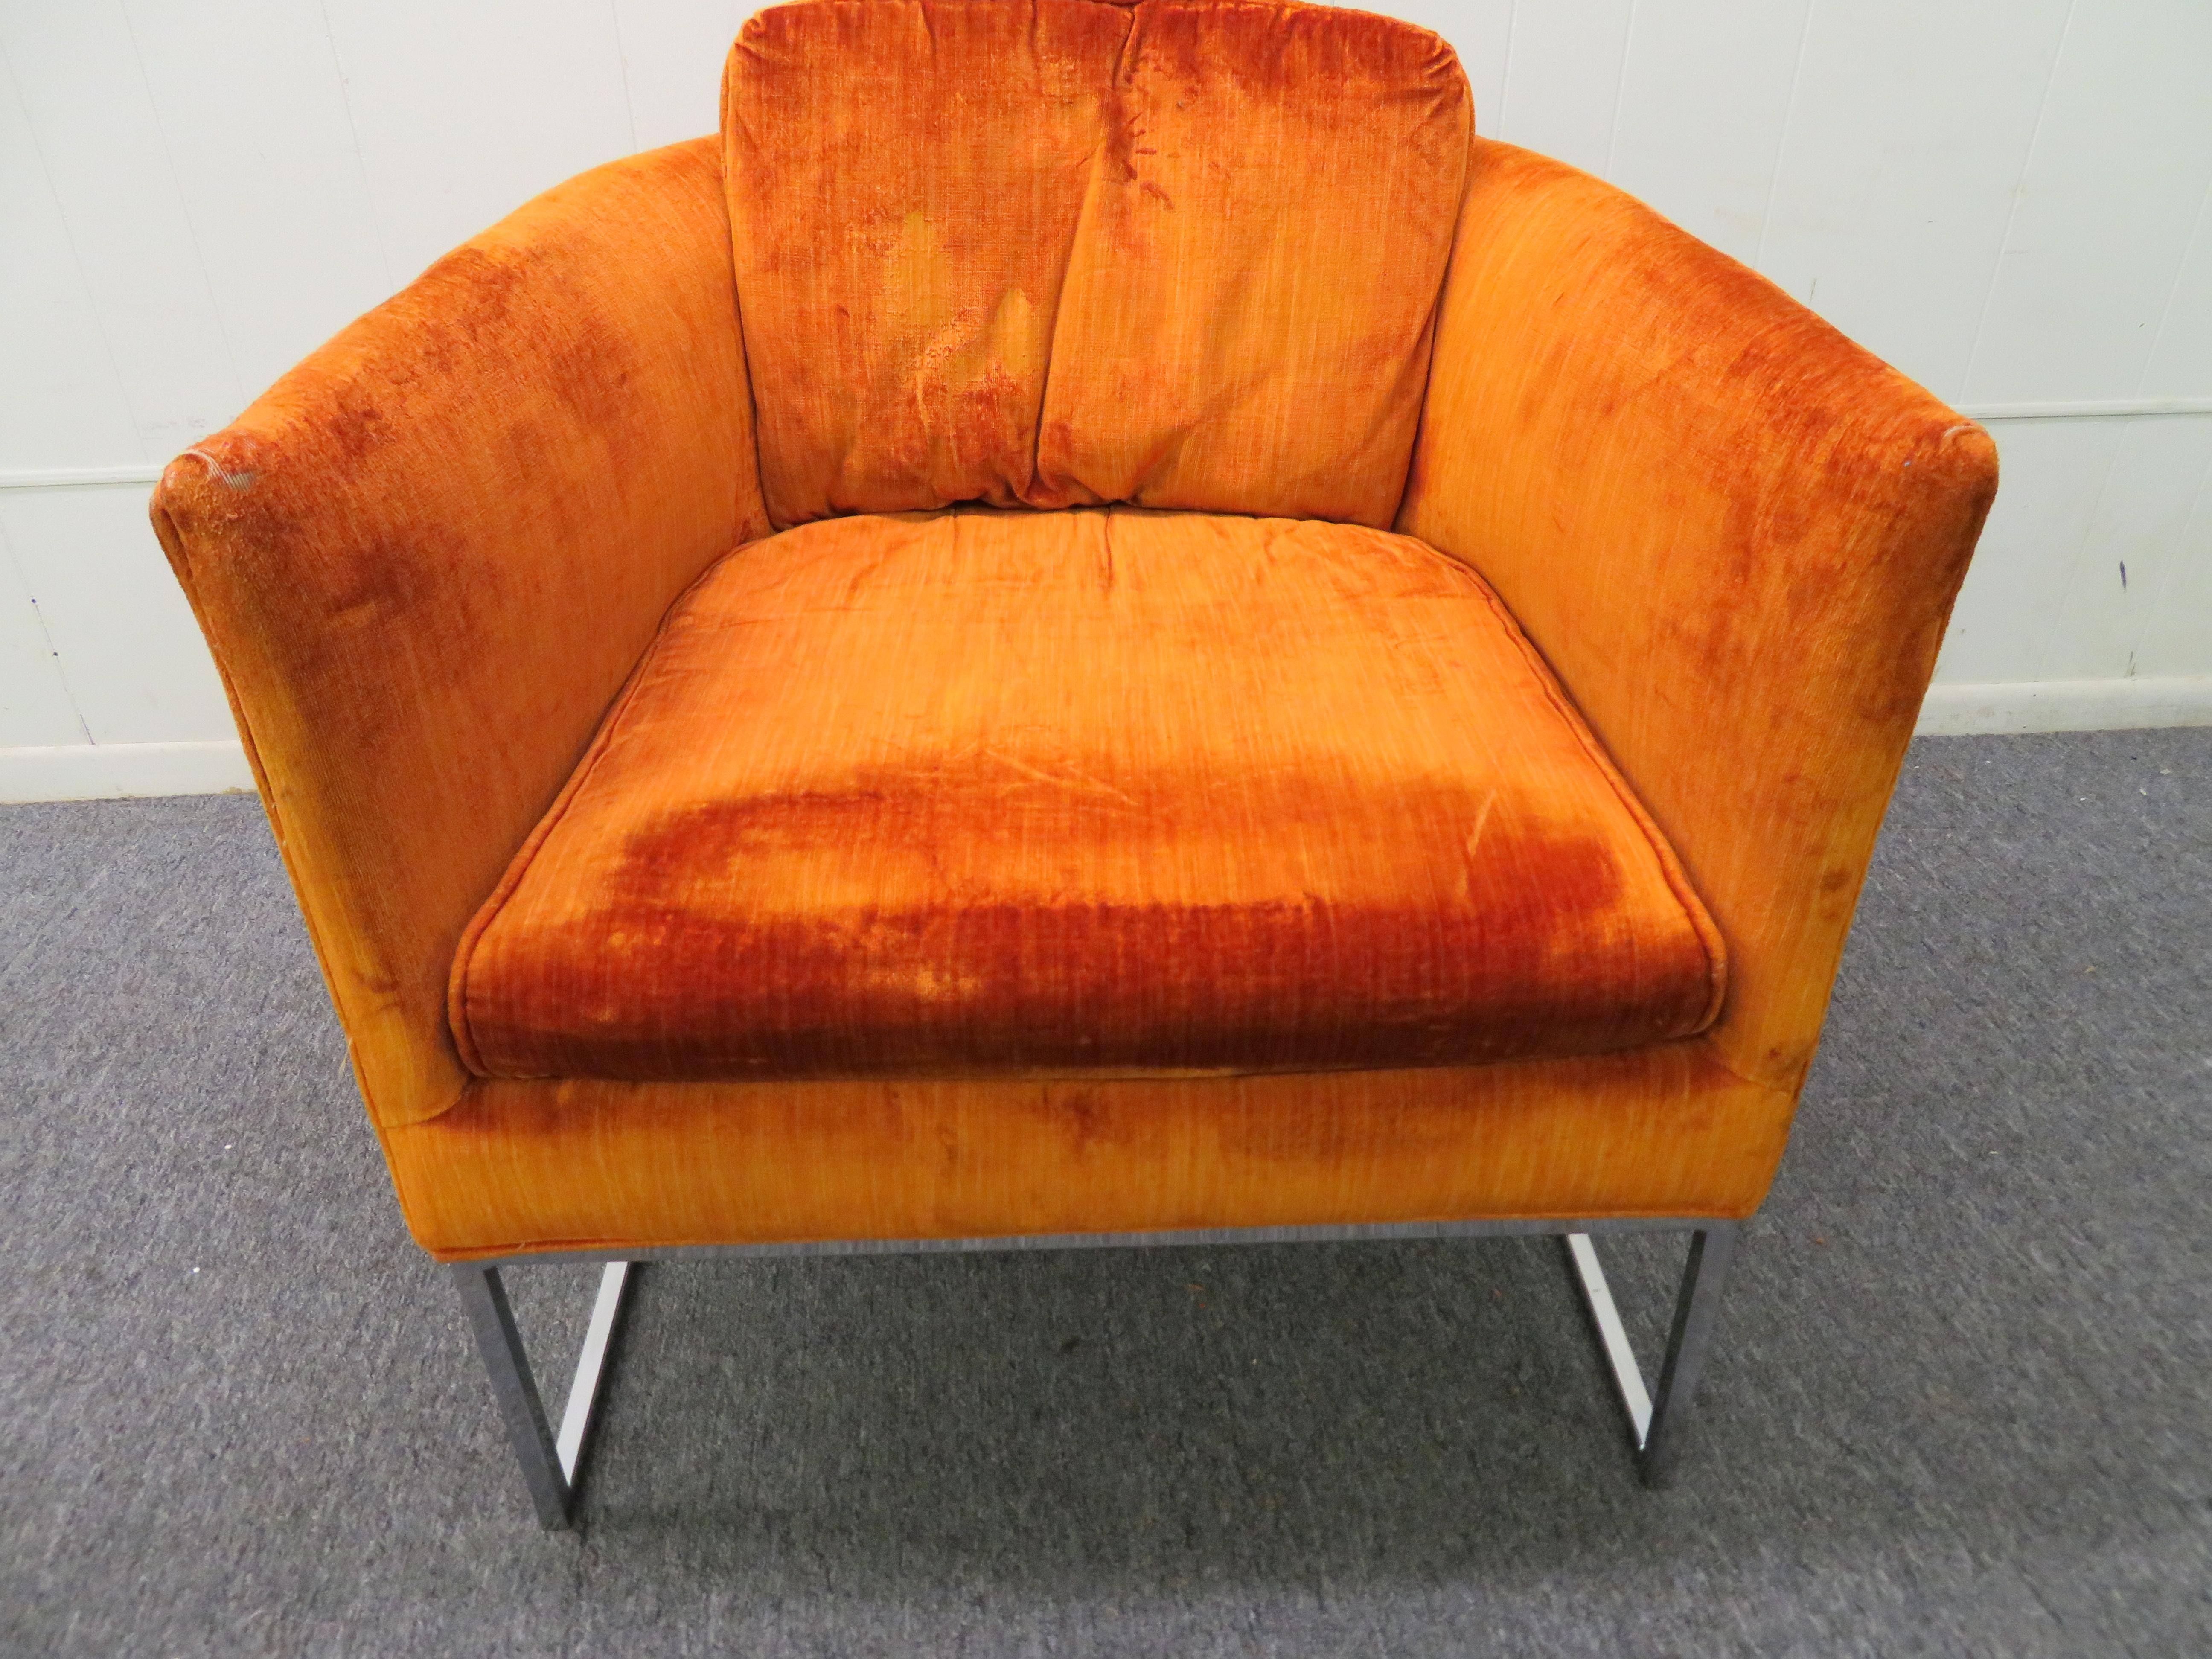 Joli fauteuil de salon à dossier baril et cadre fin chromé, style Milo Baughman. Cette chaise a conservé son velours orange d'origine qui présente des signes d'usure. Il est recommandé de la rembourrer à nouveau. Nous aimons la délicate base chromée